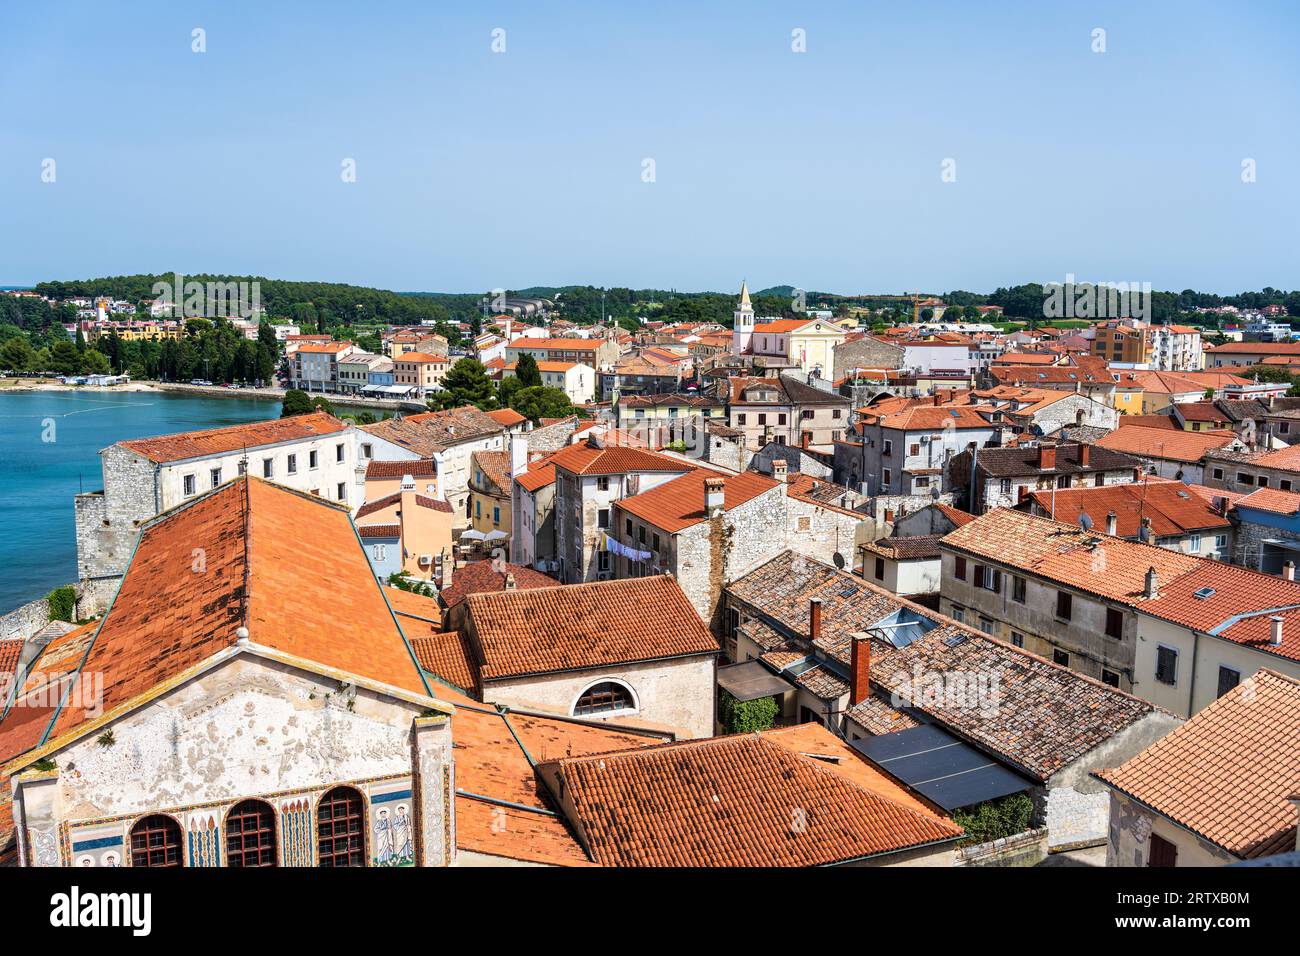 Vue depuis le clocher du complexe de la basilique euphrasienne sur les toits de tuiles rouges du centre historique de Poreč sur la péninsule d'Istrie en Croatie Banque D'Images